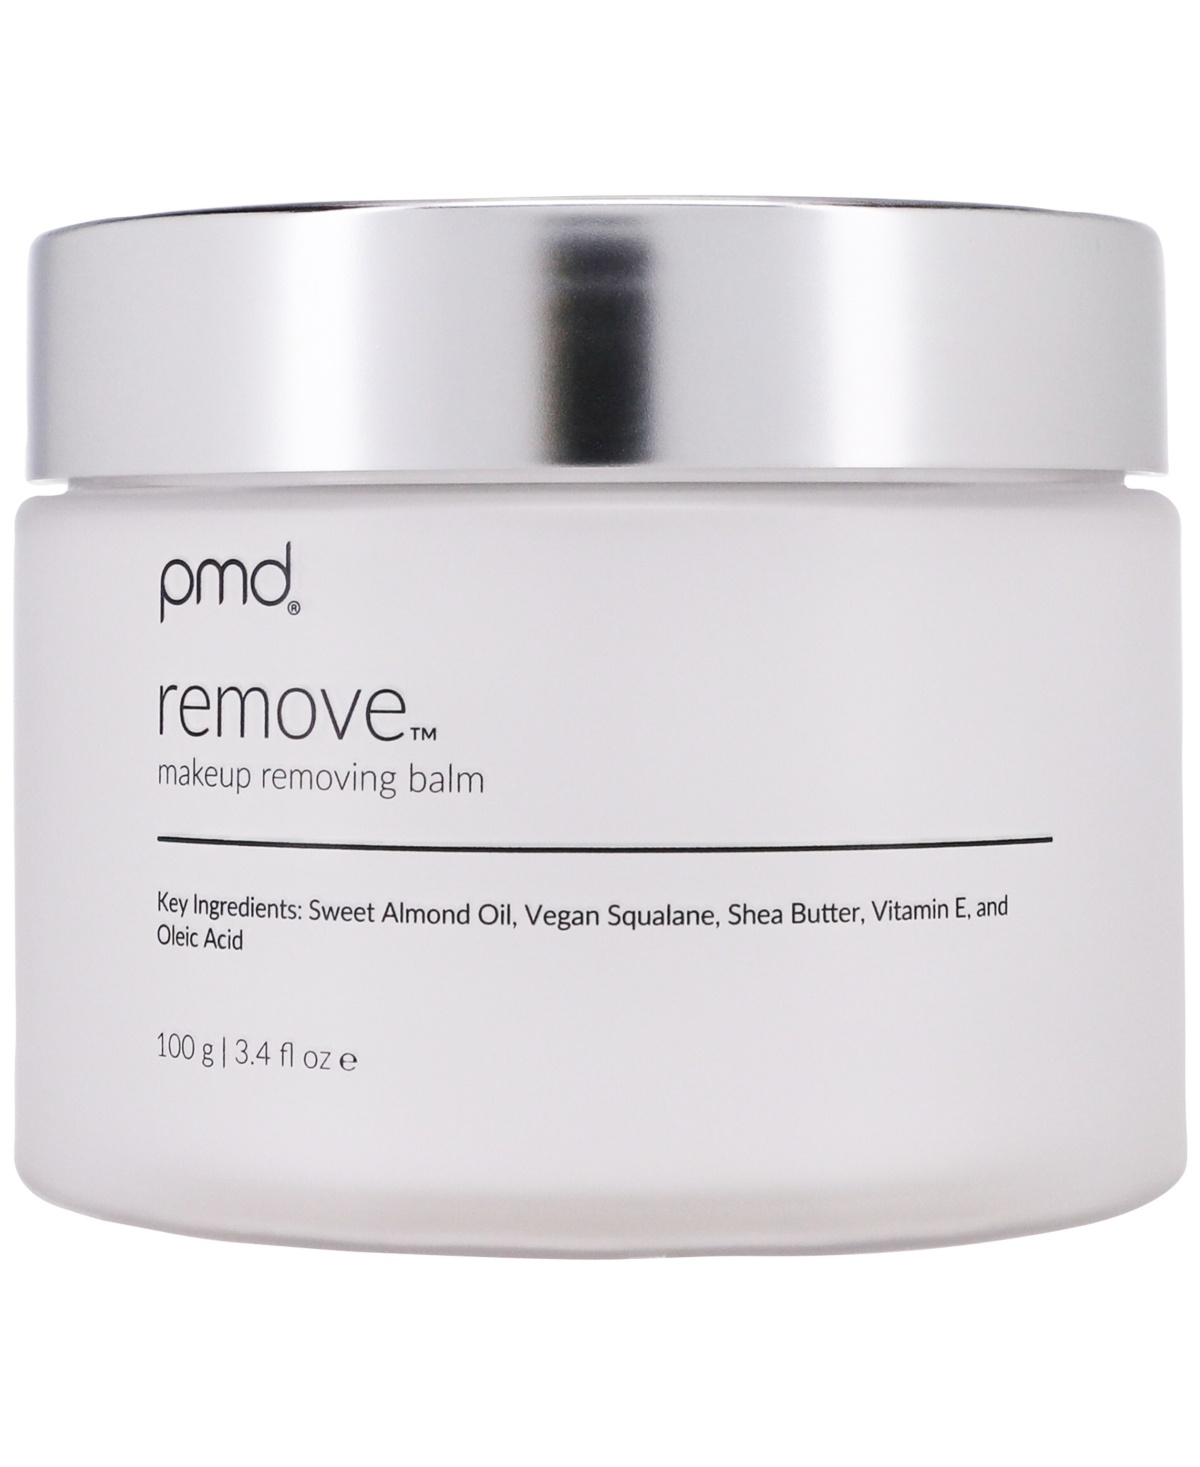 Pmd Remove Makeup Removing Balm, 3.4 Fl oz In Cream